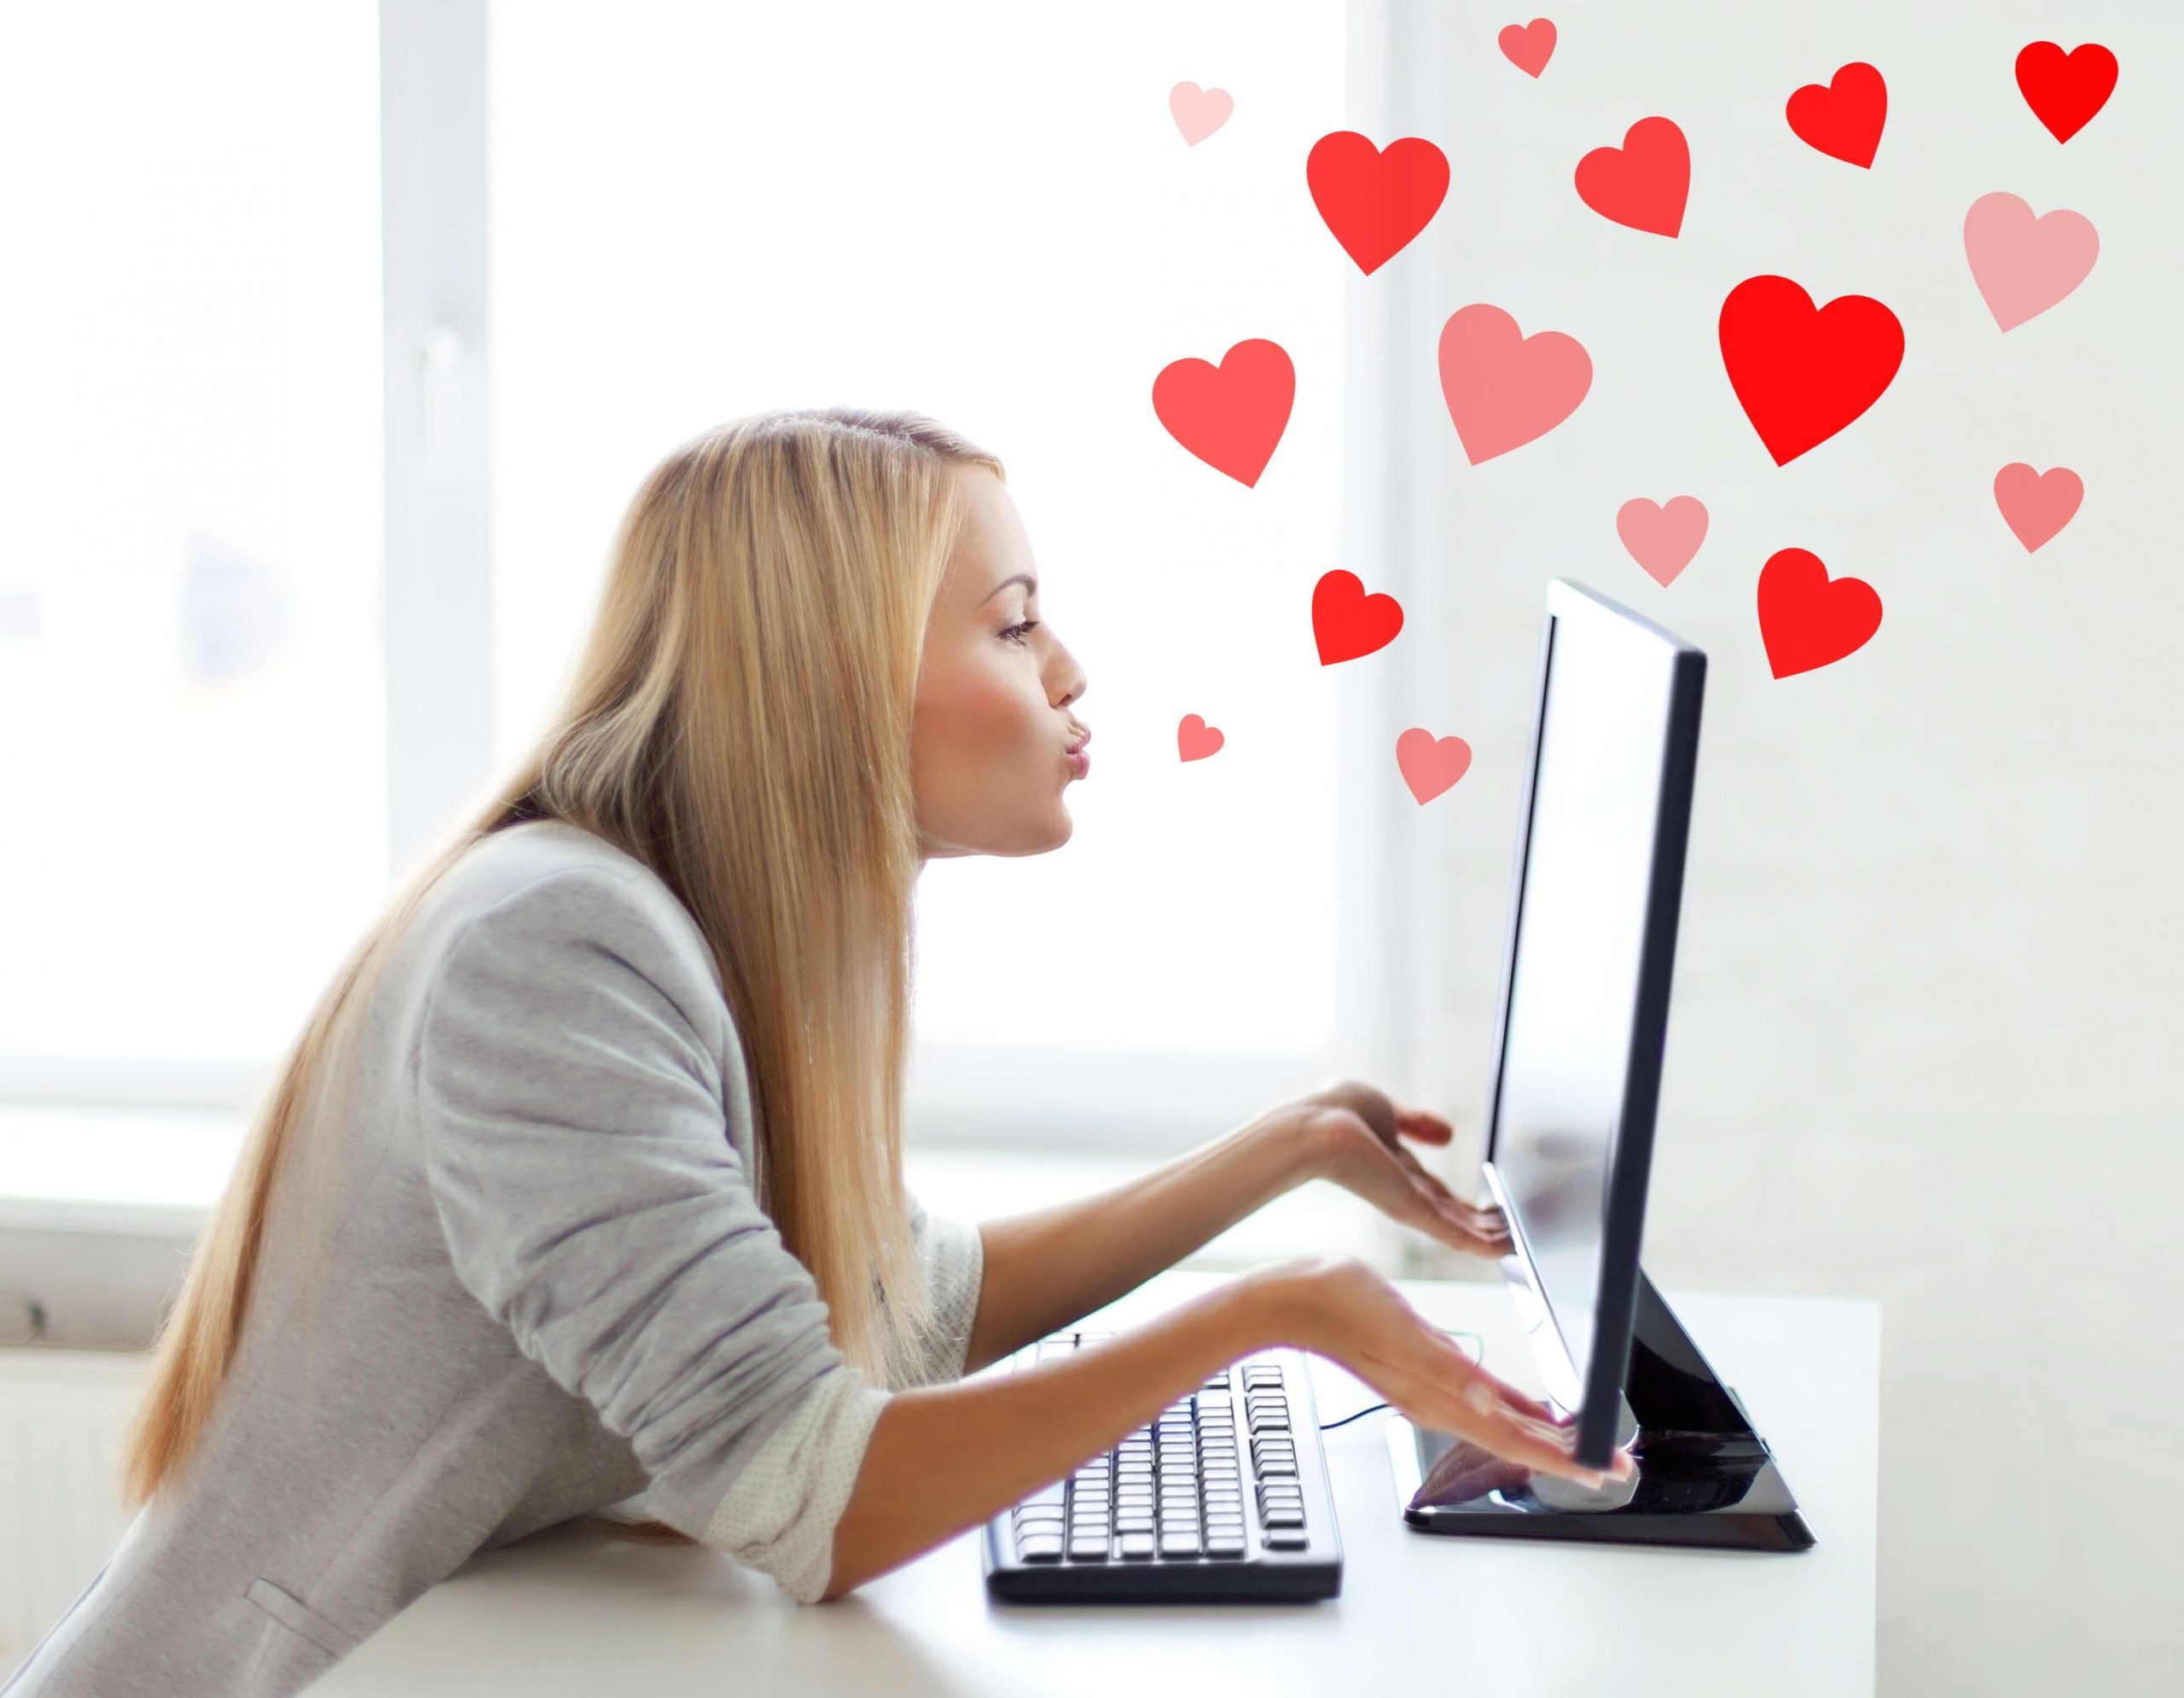 Бесплатный сайт онлайн-знакомств: особенности, преимущества, популярность